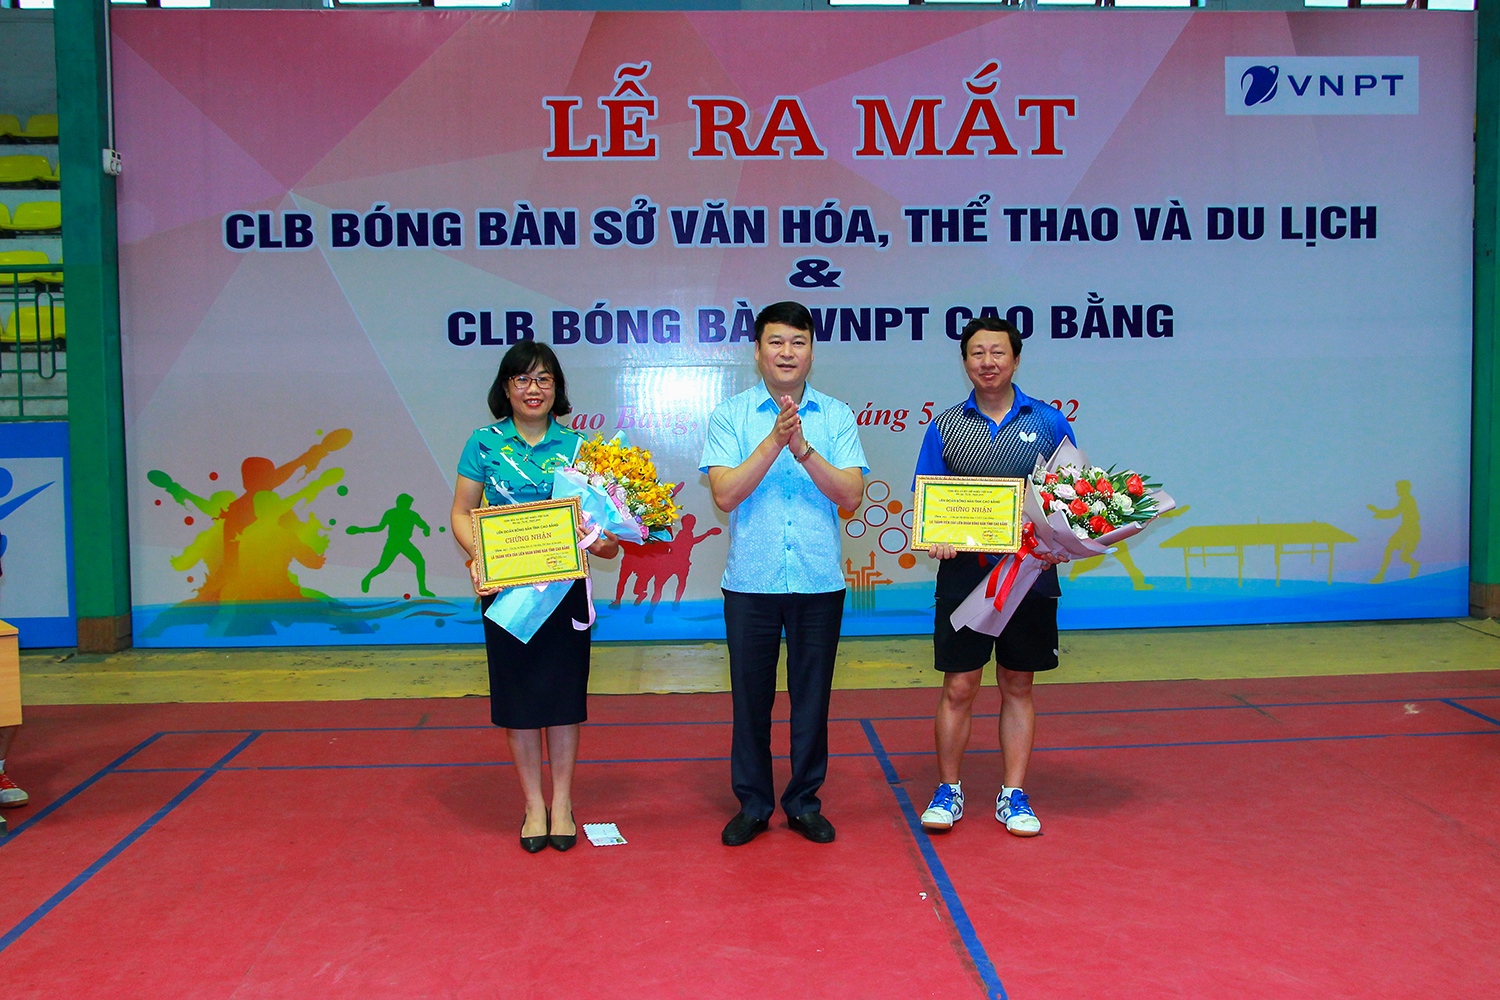 Ra mắt CLB bóng bàn Sở Văn hóa, Thể thao và Du lịch và CLB bóng bàn VNPT Cao Bằng